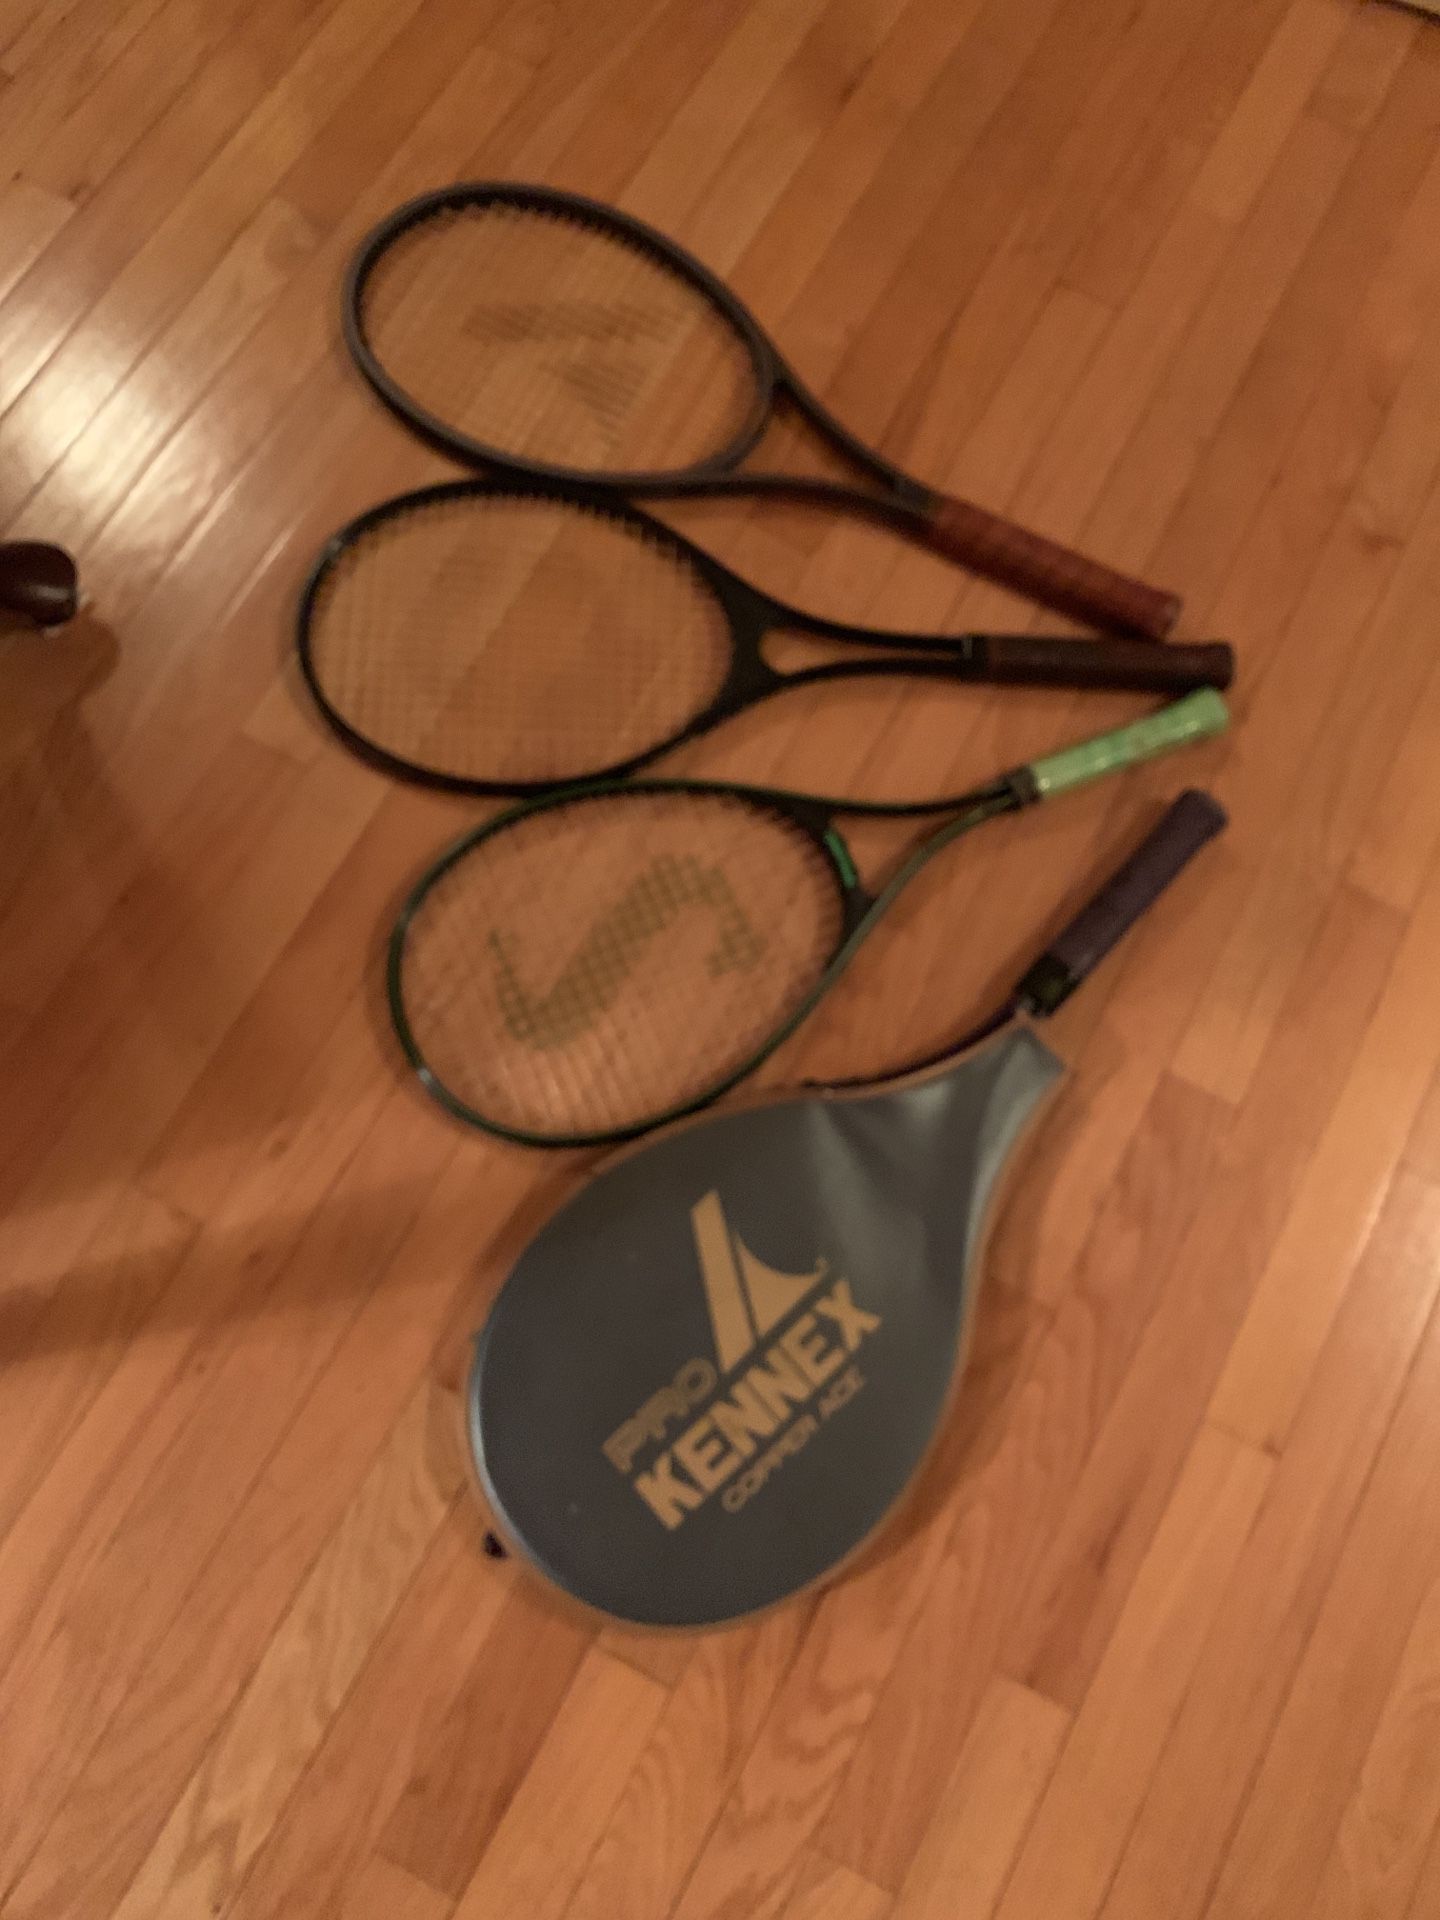 4 tennis rackets